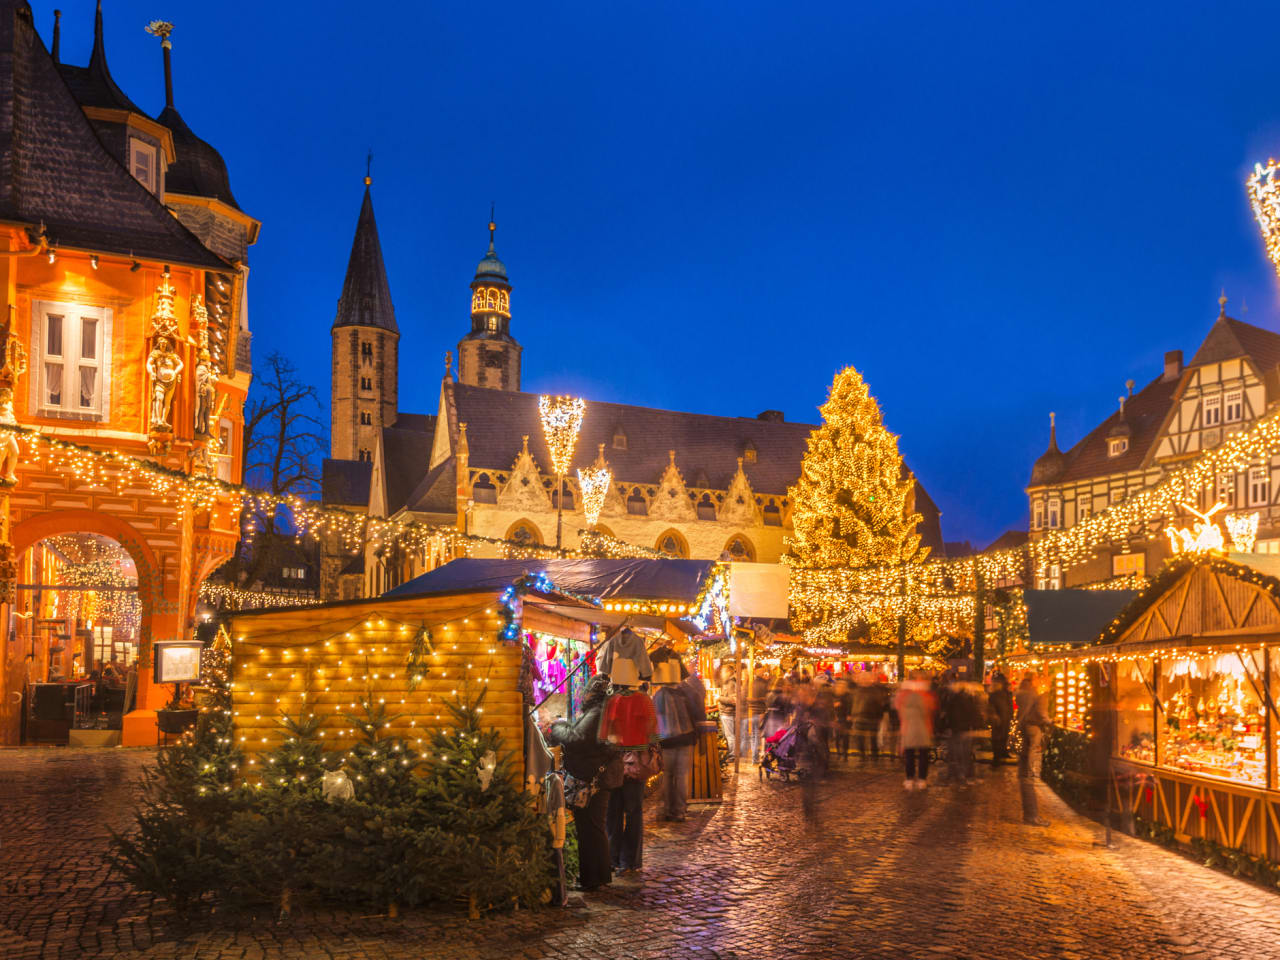 Weihnachtsmarkt Goslar ©iStock.com/Juergen Sack